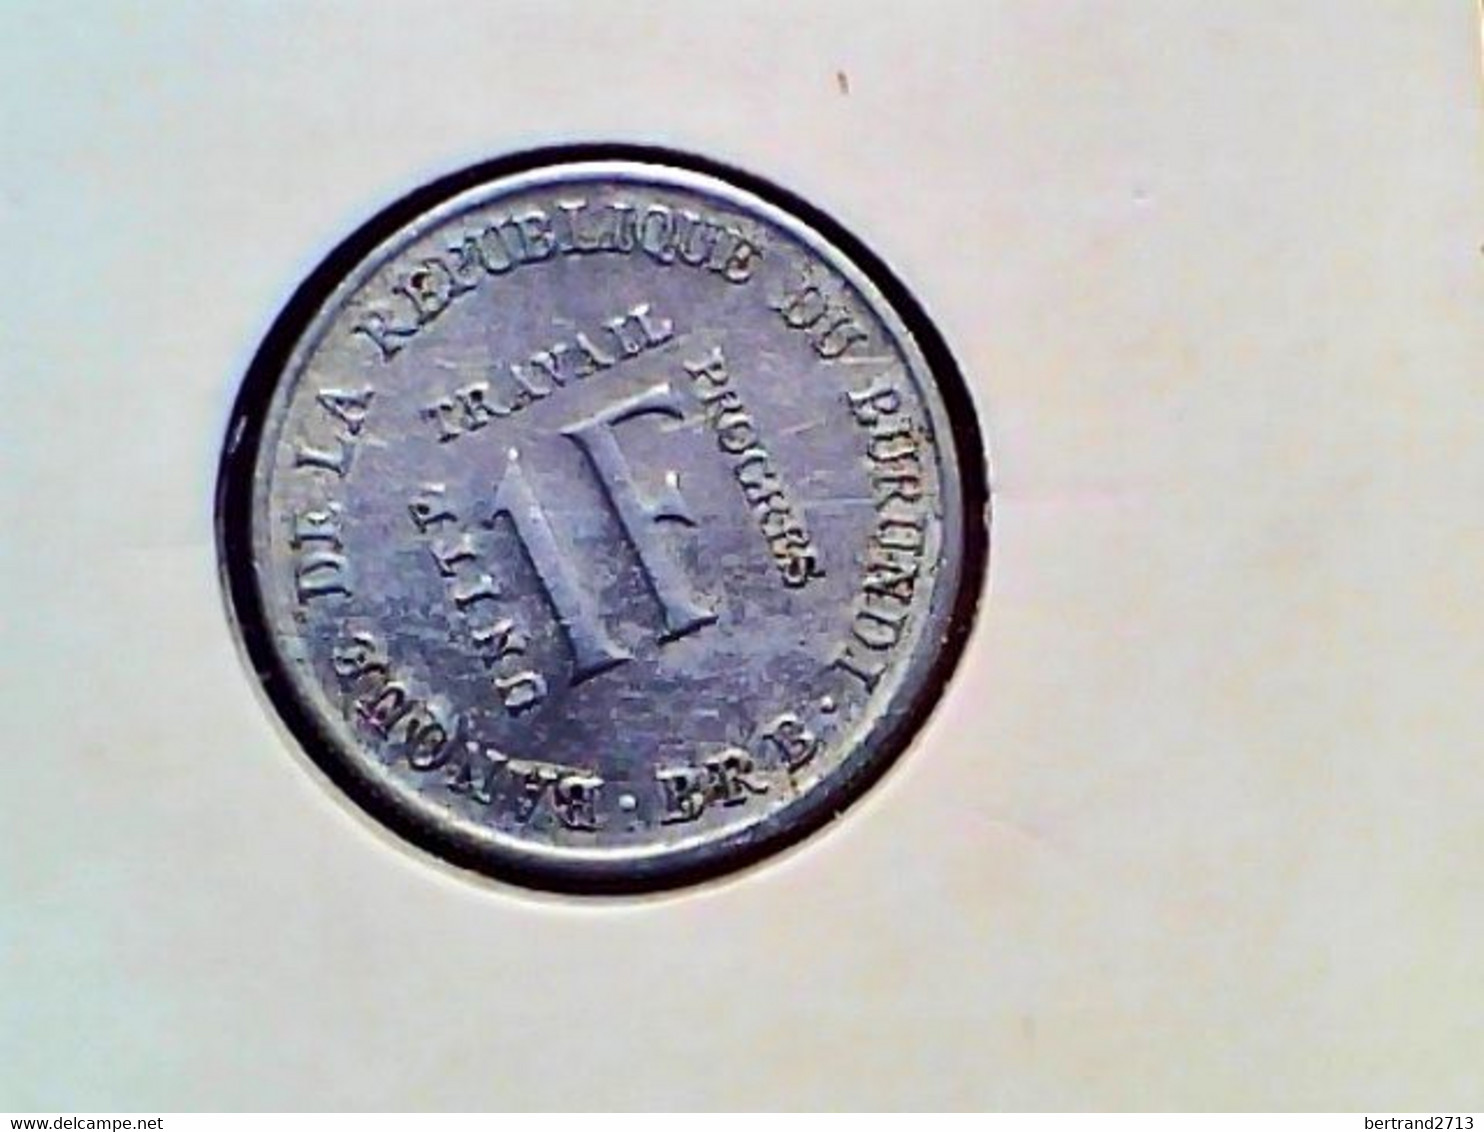 Burundi 1 Franc 1970 KM 18 - Burundi